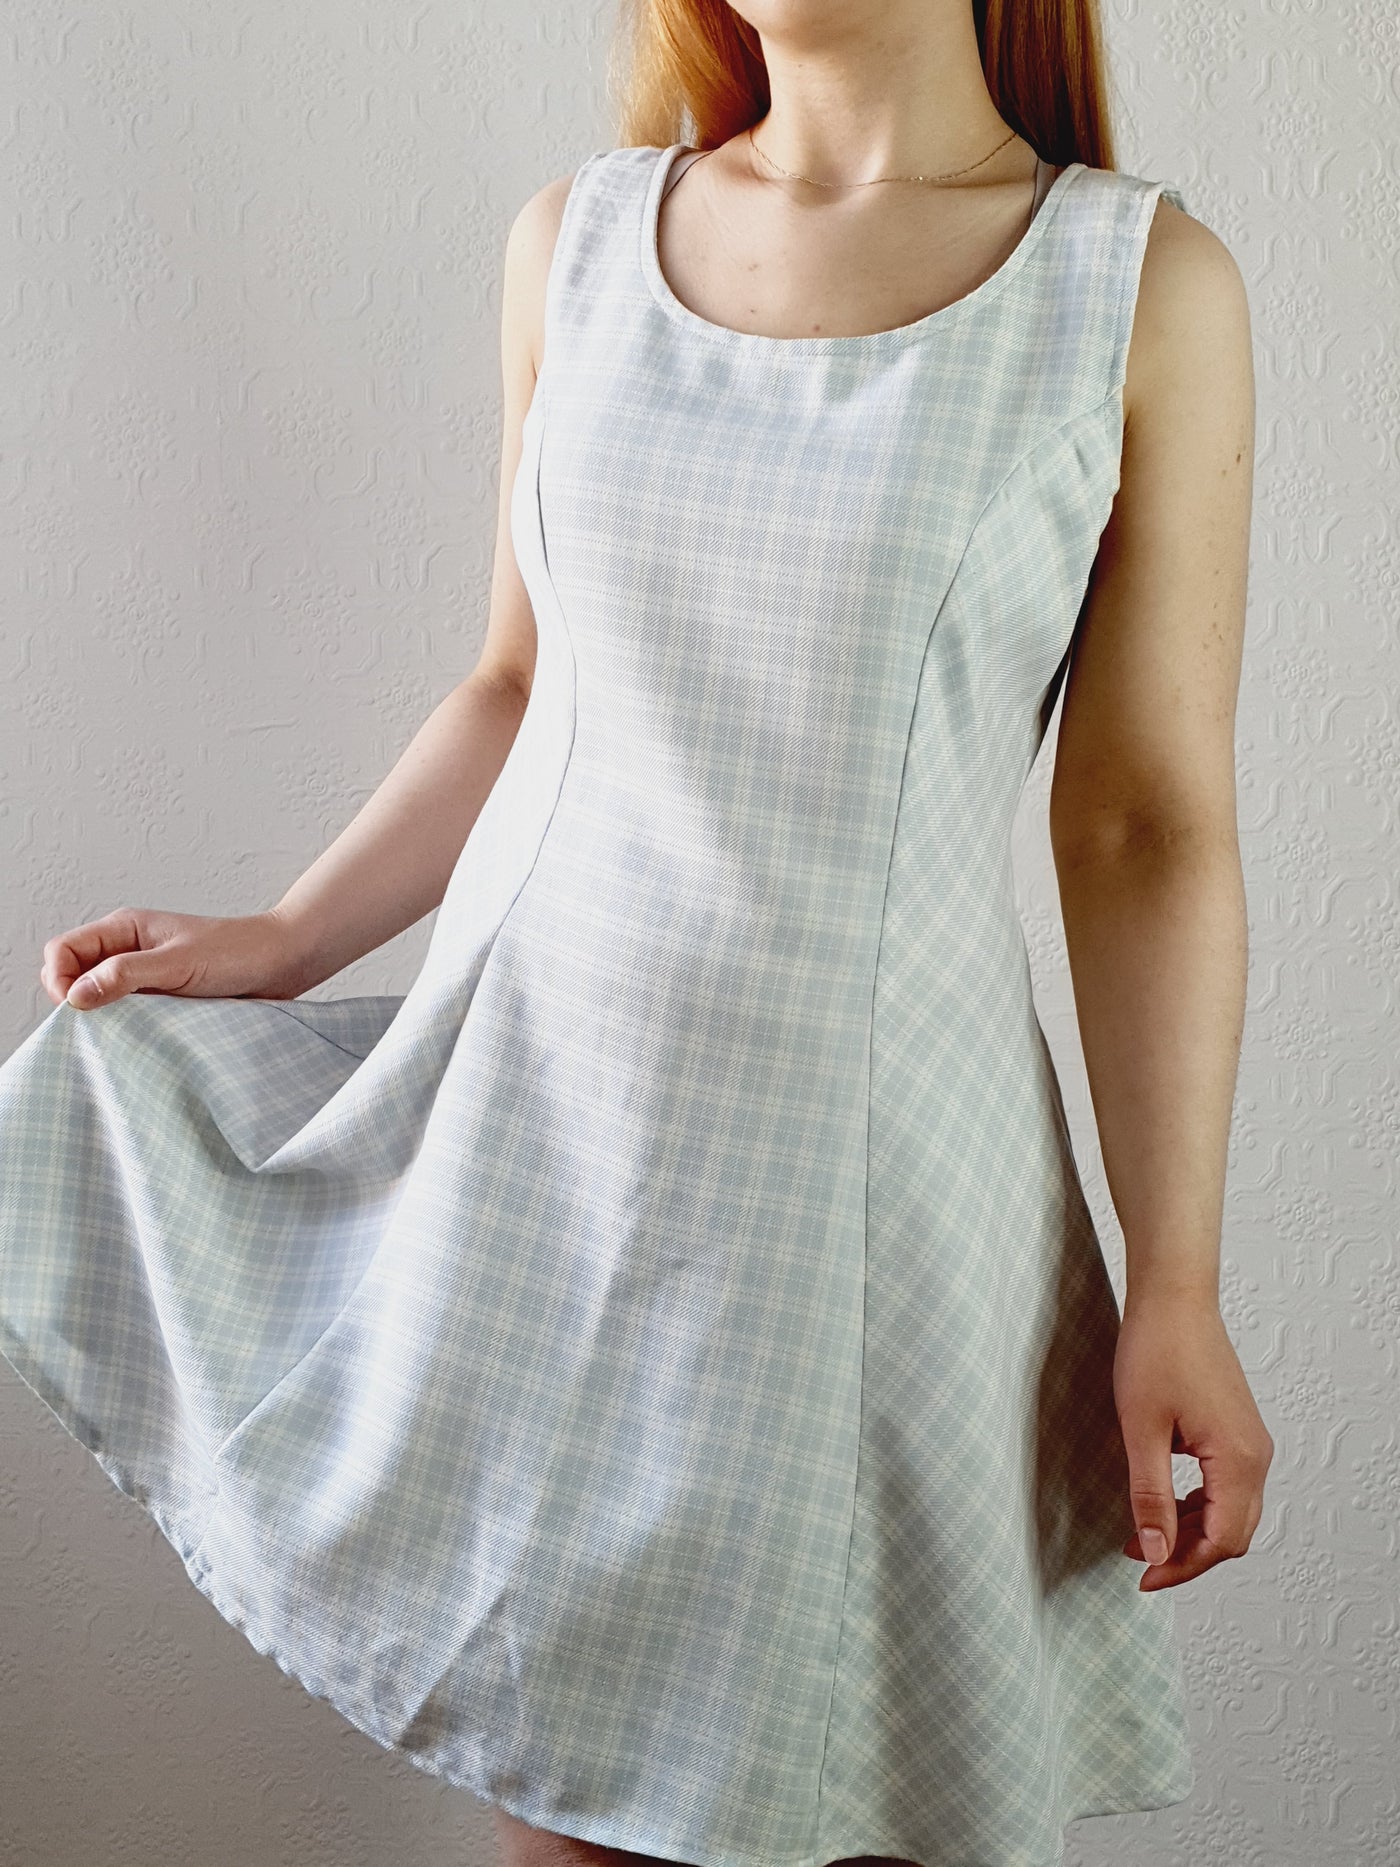 Vintage A-line Gingham Dress • S-M